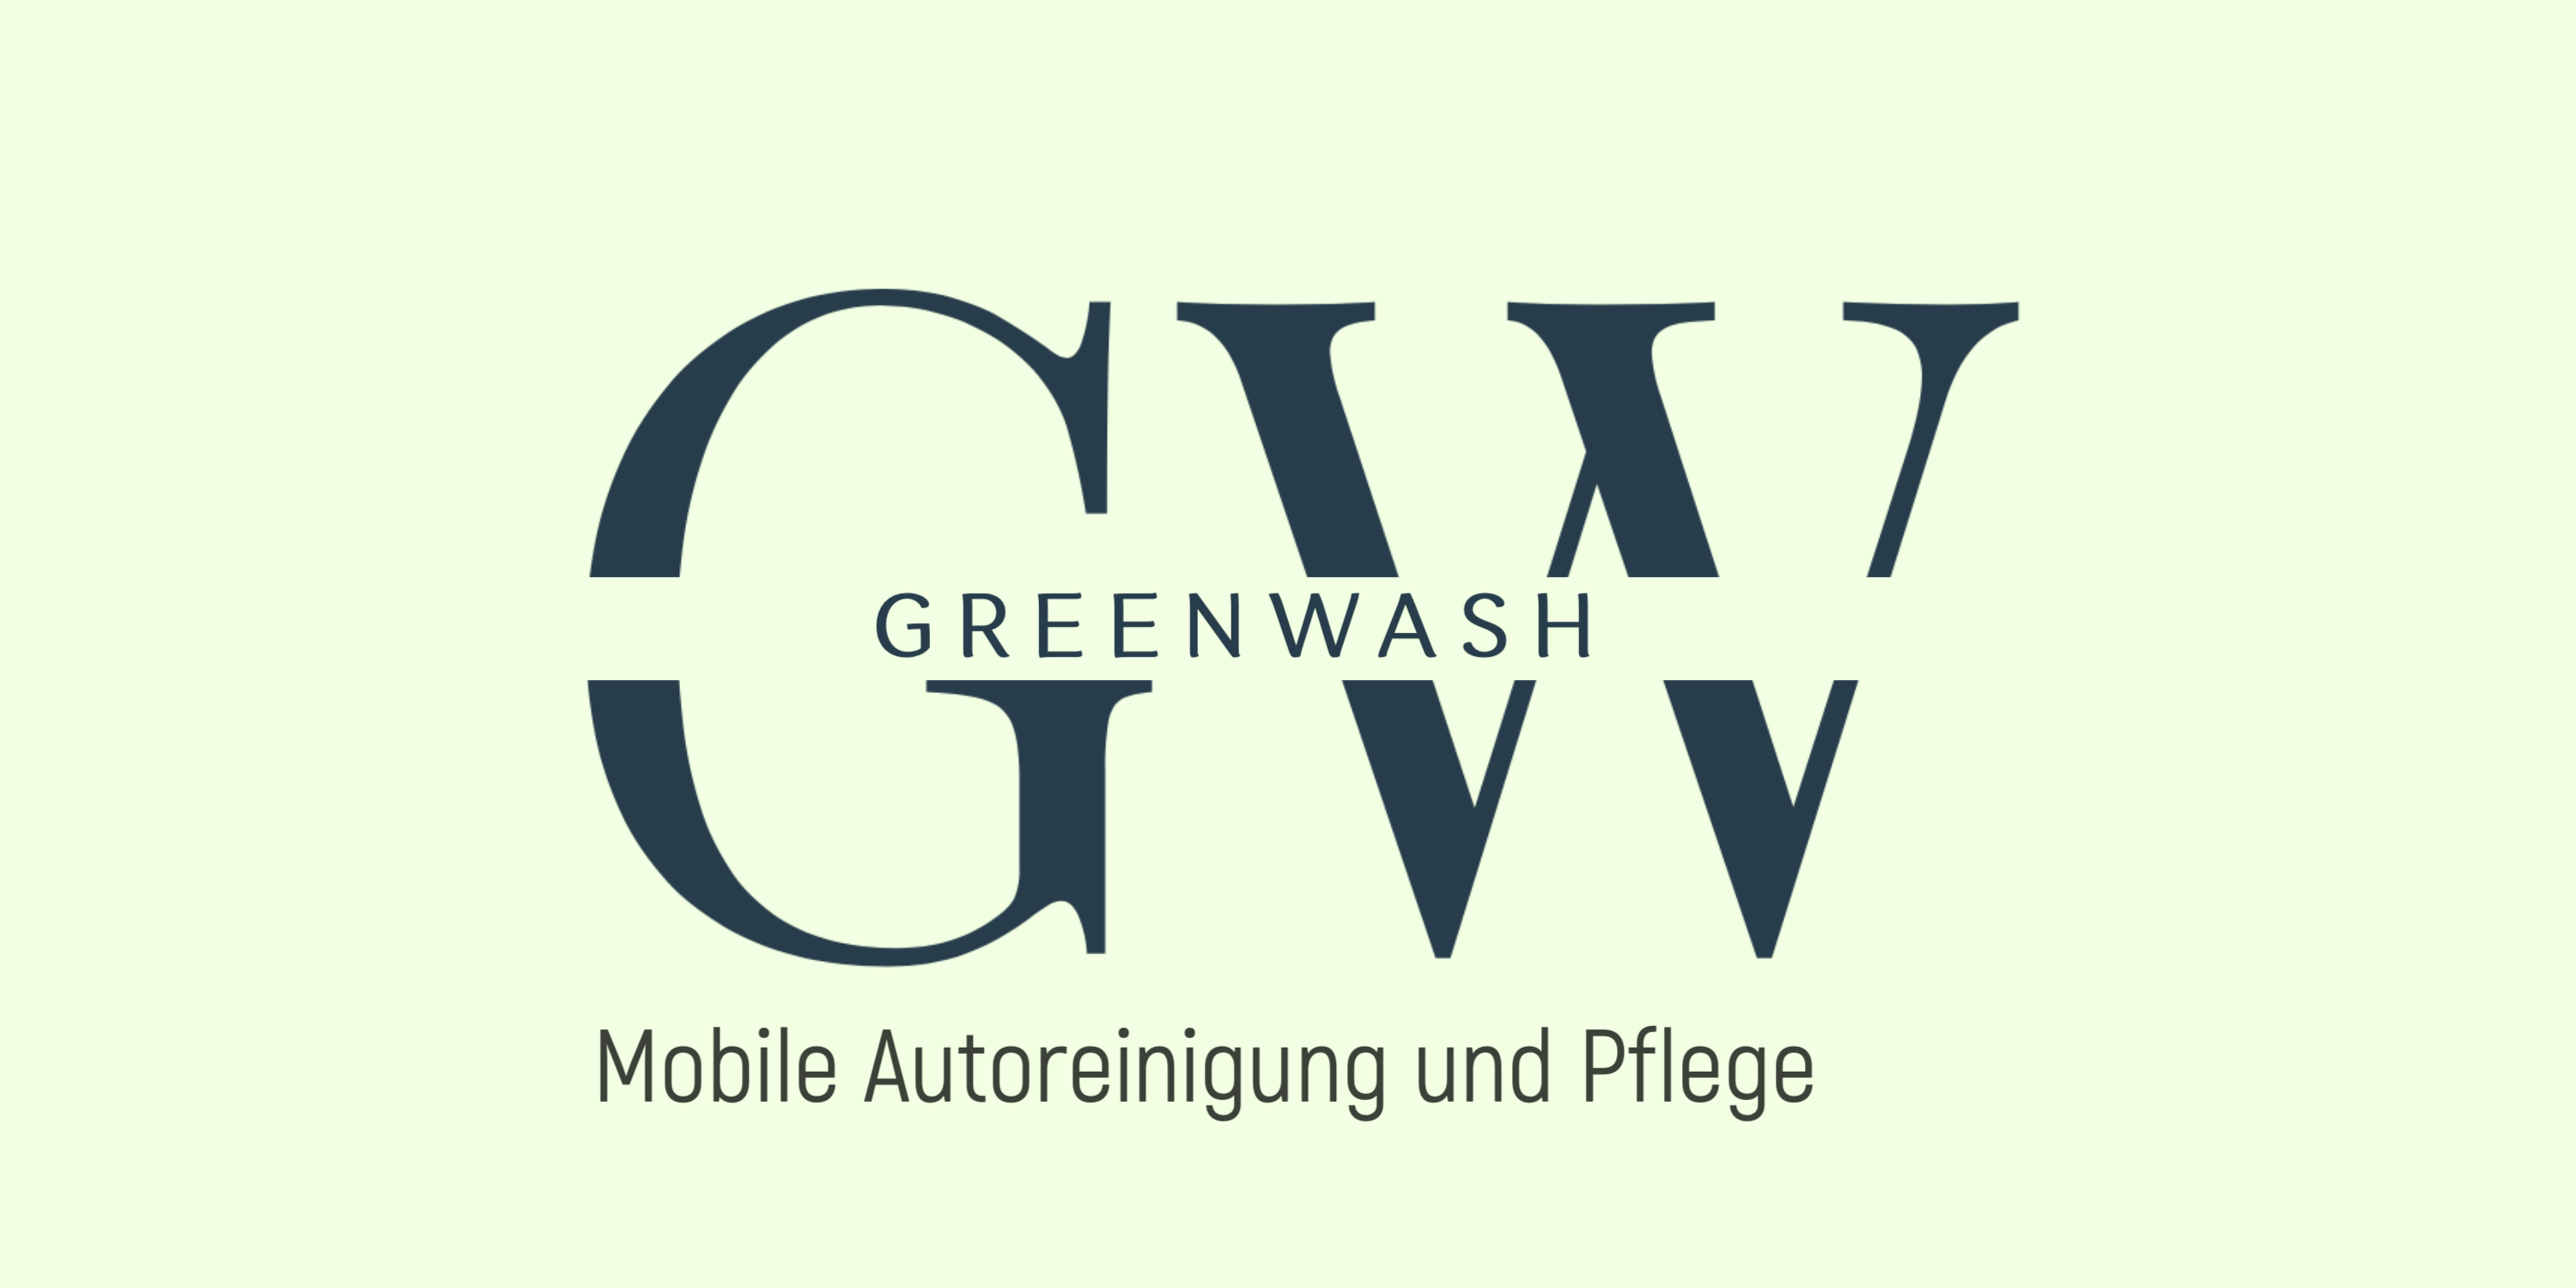 Greenwash - mobile Autoreinigung und Pflege